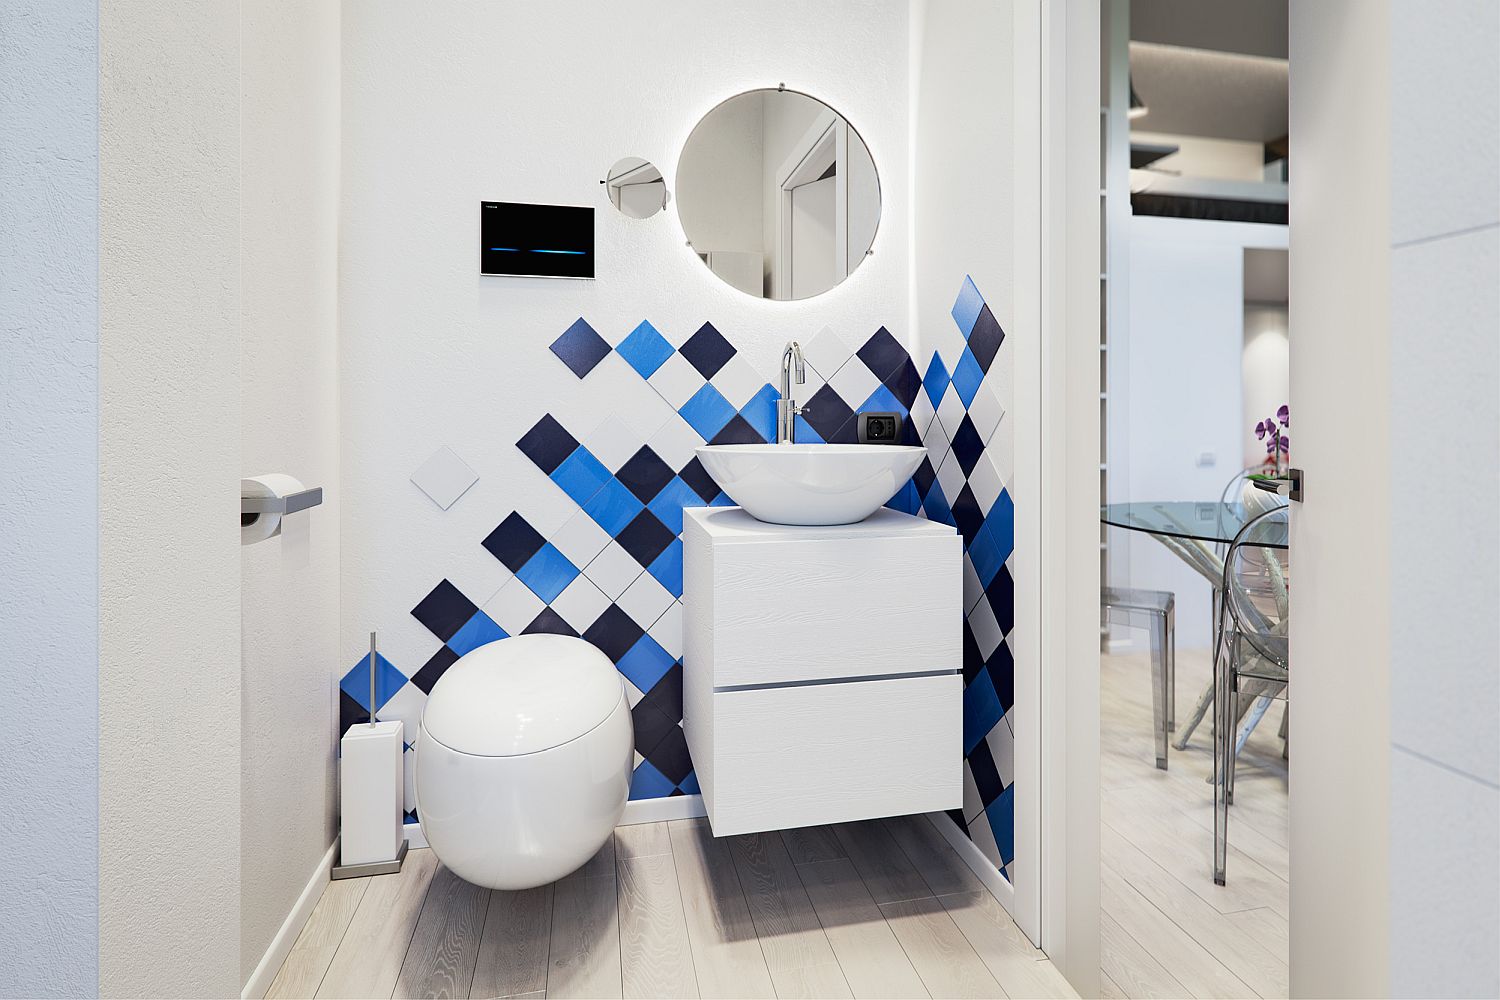 Hình ảnh phòng tắm nhỏ tiện nghi tông màu trắng chủ đạo, mảng tường ốp gạch xanh da trời, xanh than tạo điểm nhấn